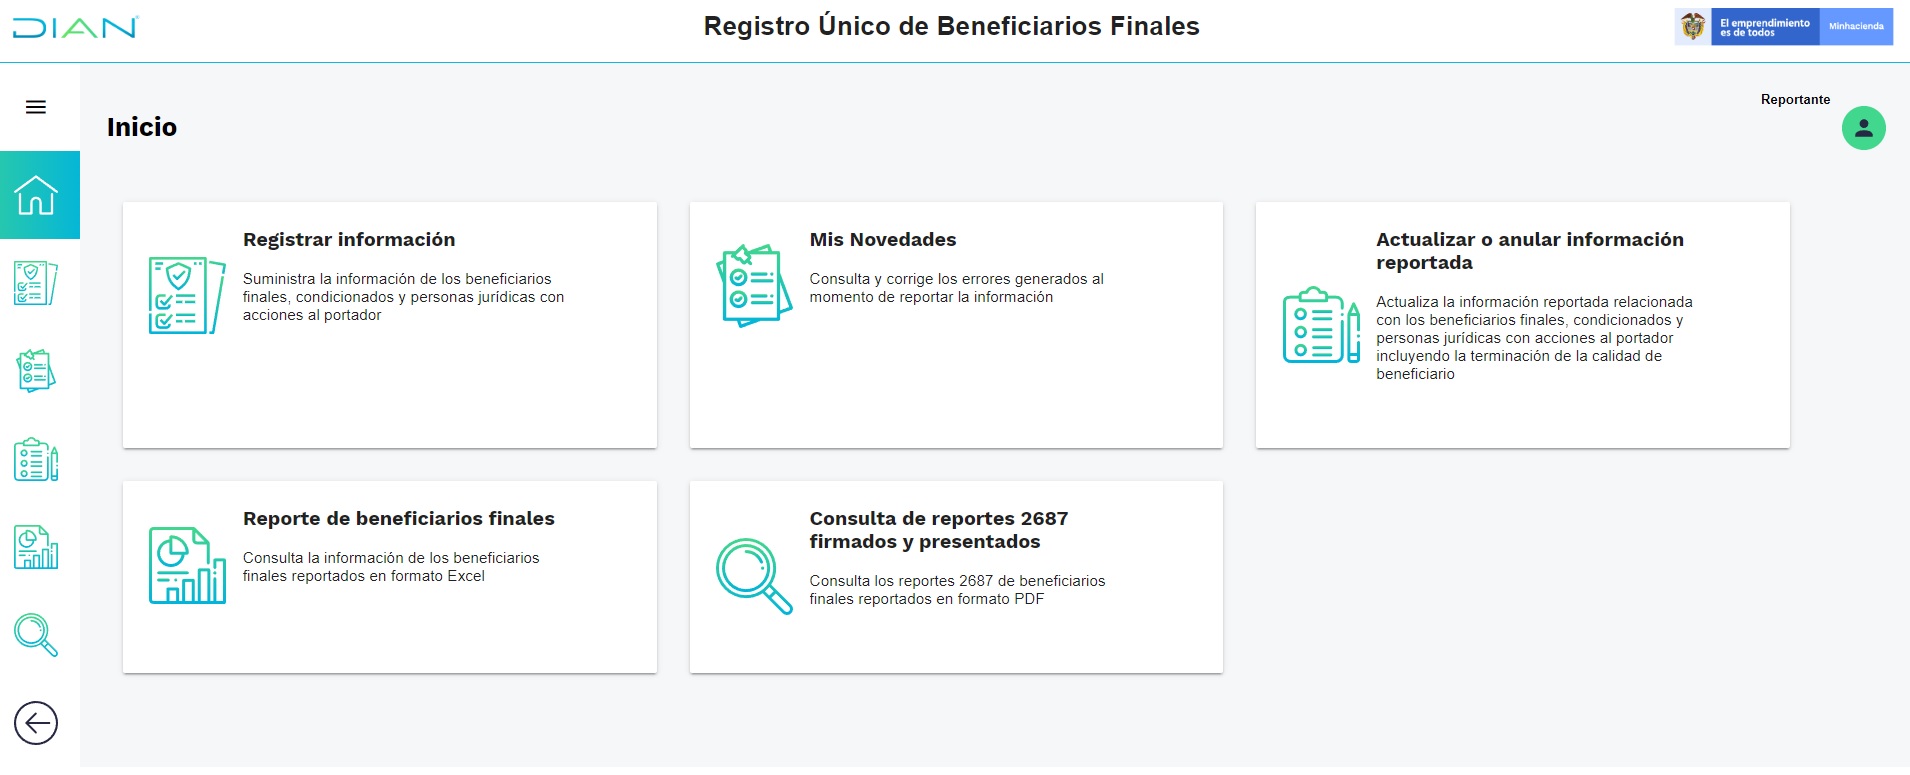 Registro único de beneficiarios finales